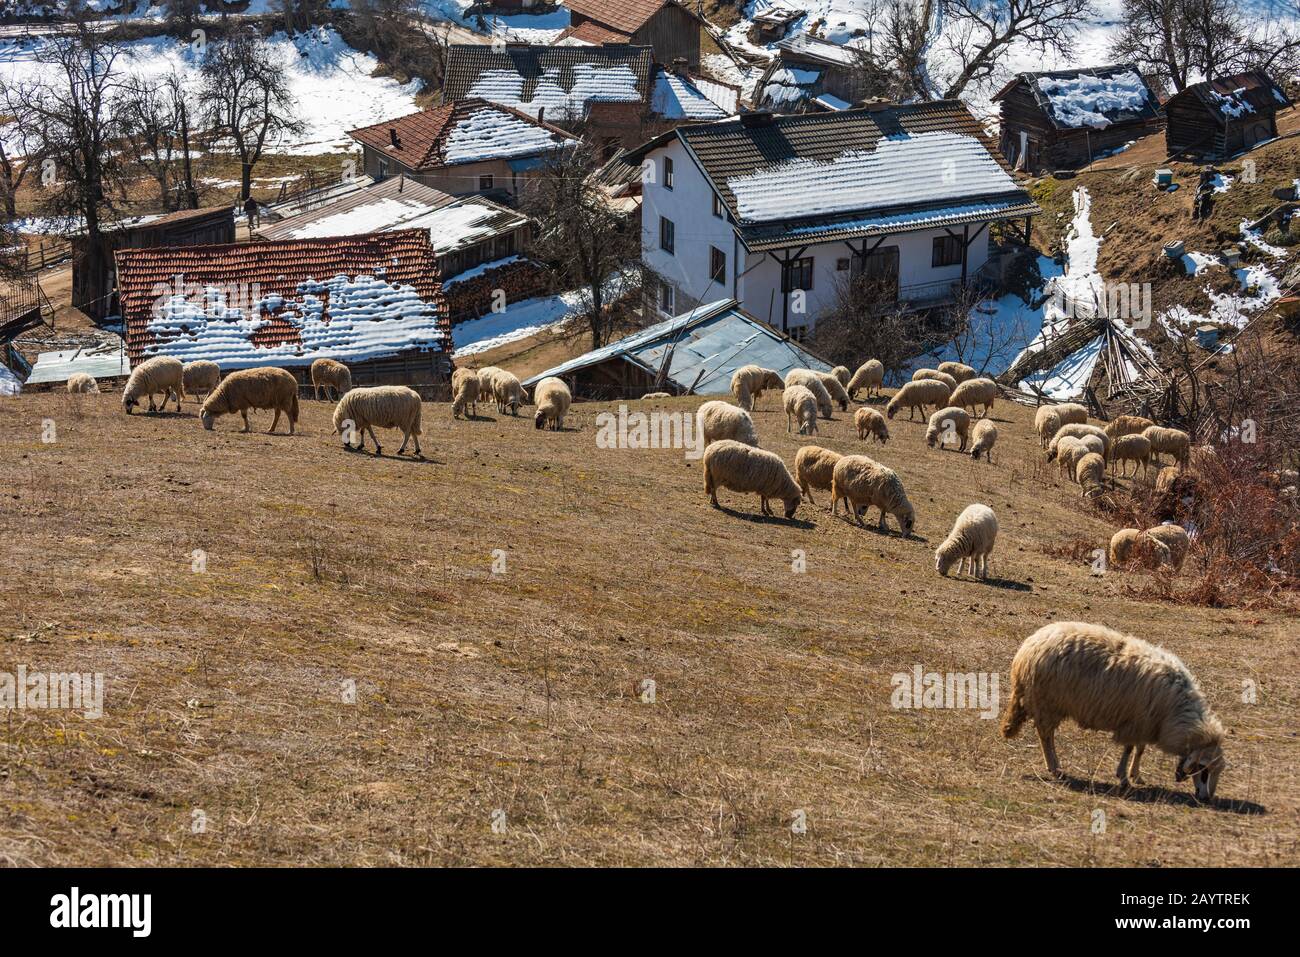 Alta nelle montagne Rhodope, Bulgaria in piccoli villaggi pecore al pascolo sul campo. Pecora provvedere lana, carne di latte per la gente locale Foto Stock